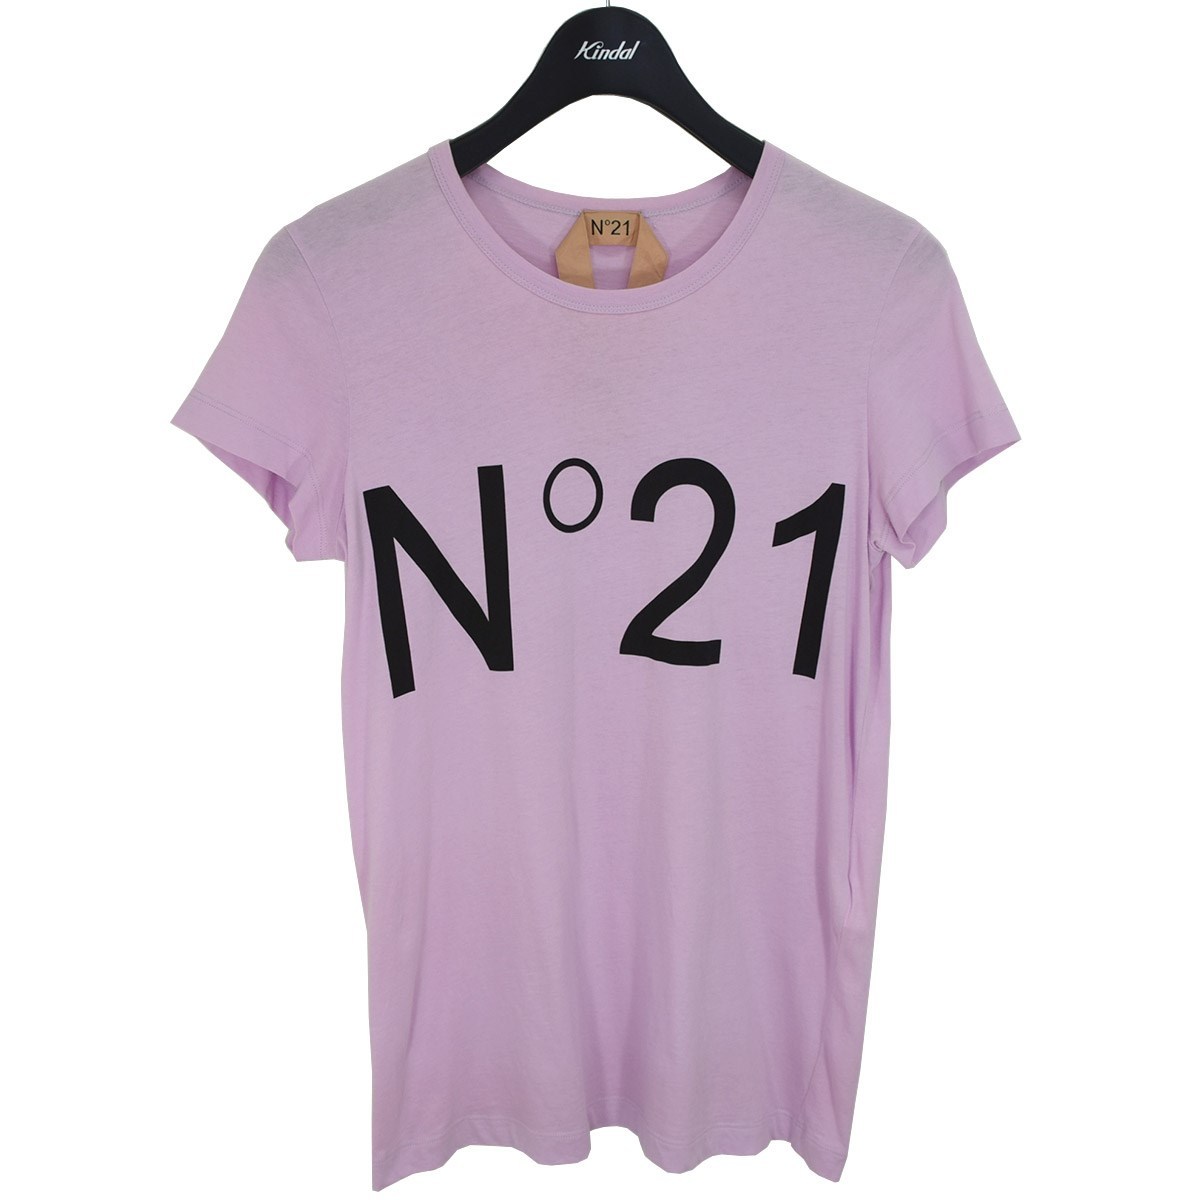 ヤフオク! -n.21 ロゴ t-シャツ(Tシャツ)の中古品・新品・古着一覧